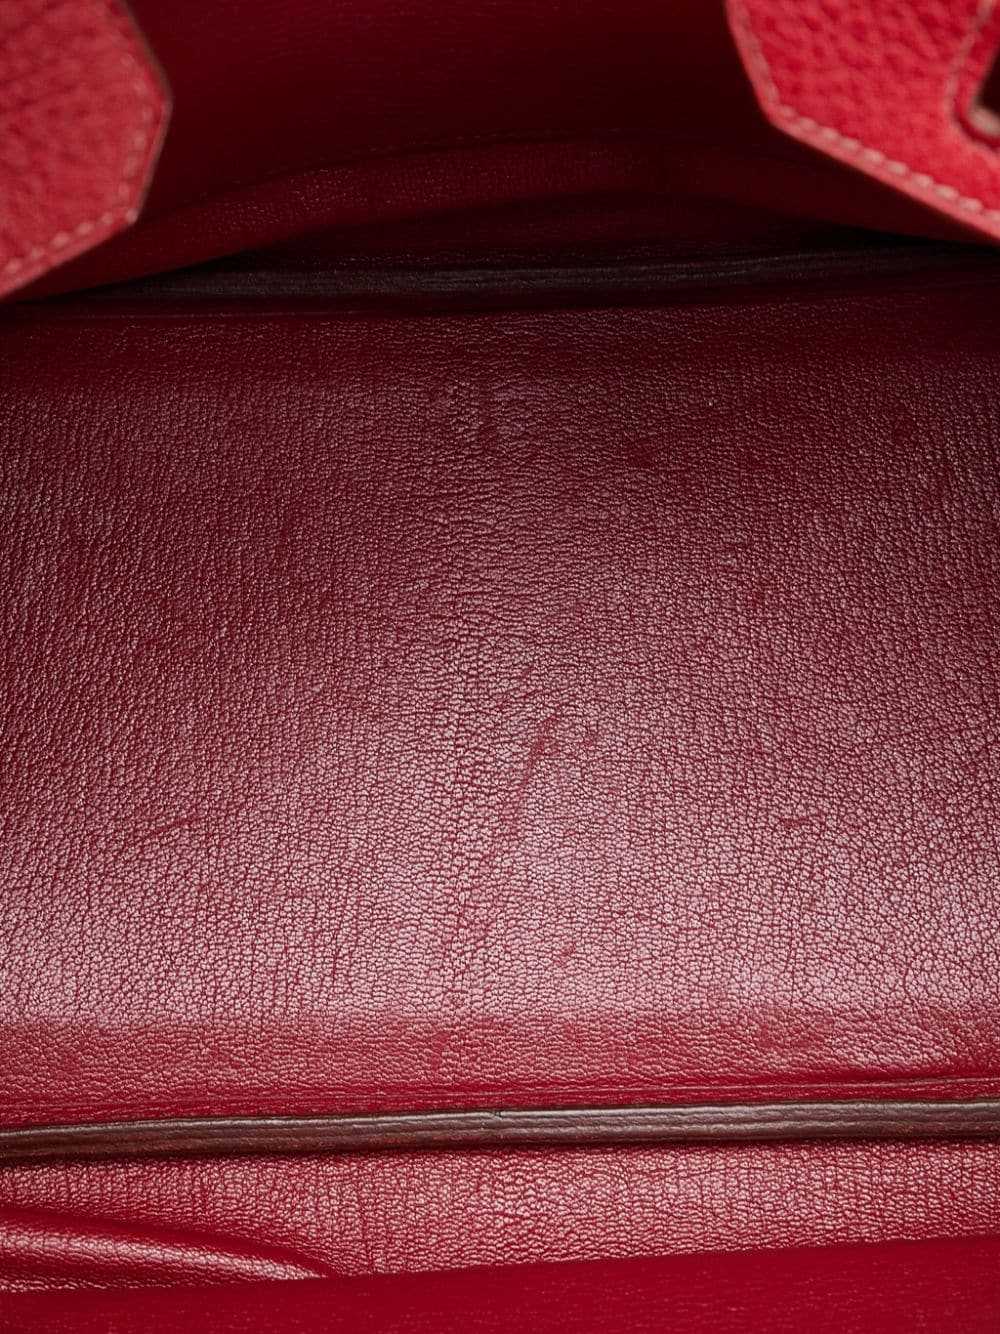 Hermès Pre-Owned pre-owned Birkin 30 handbag - Red - image 5